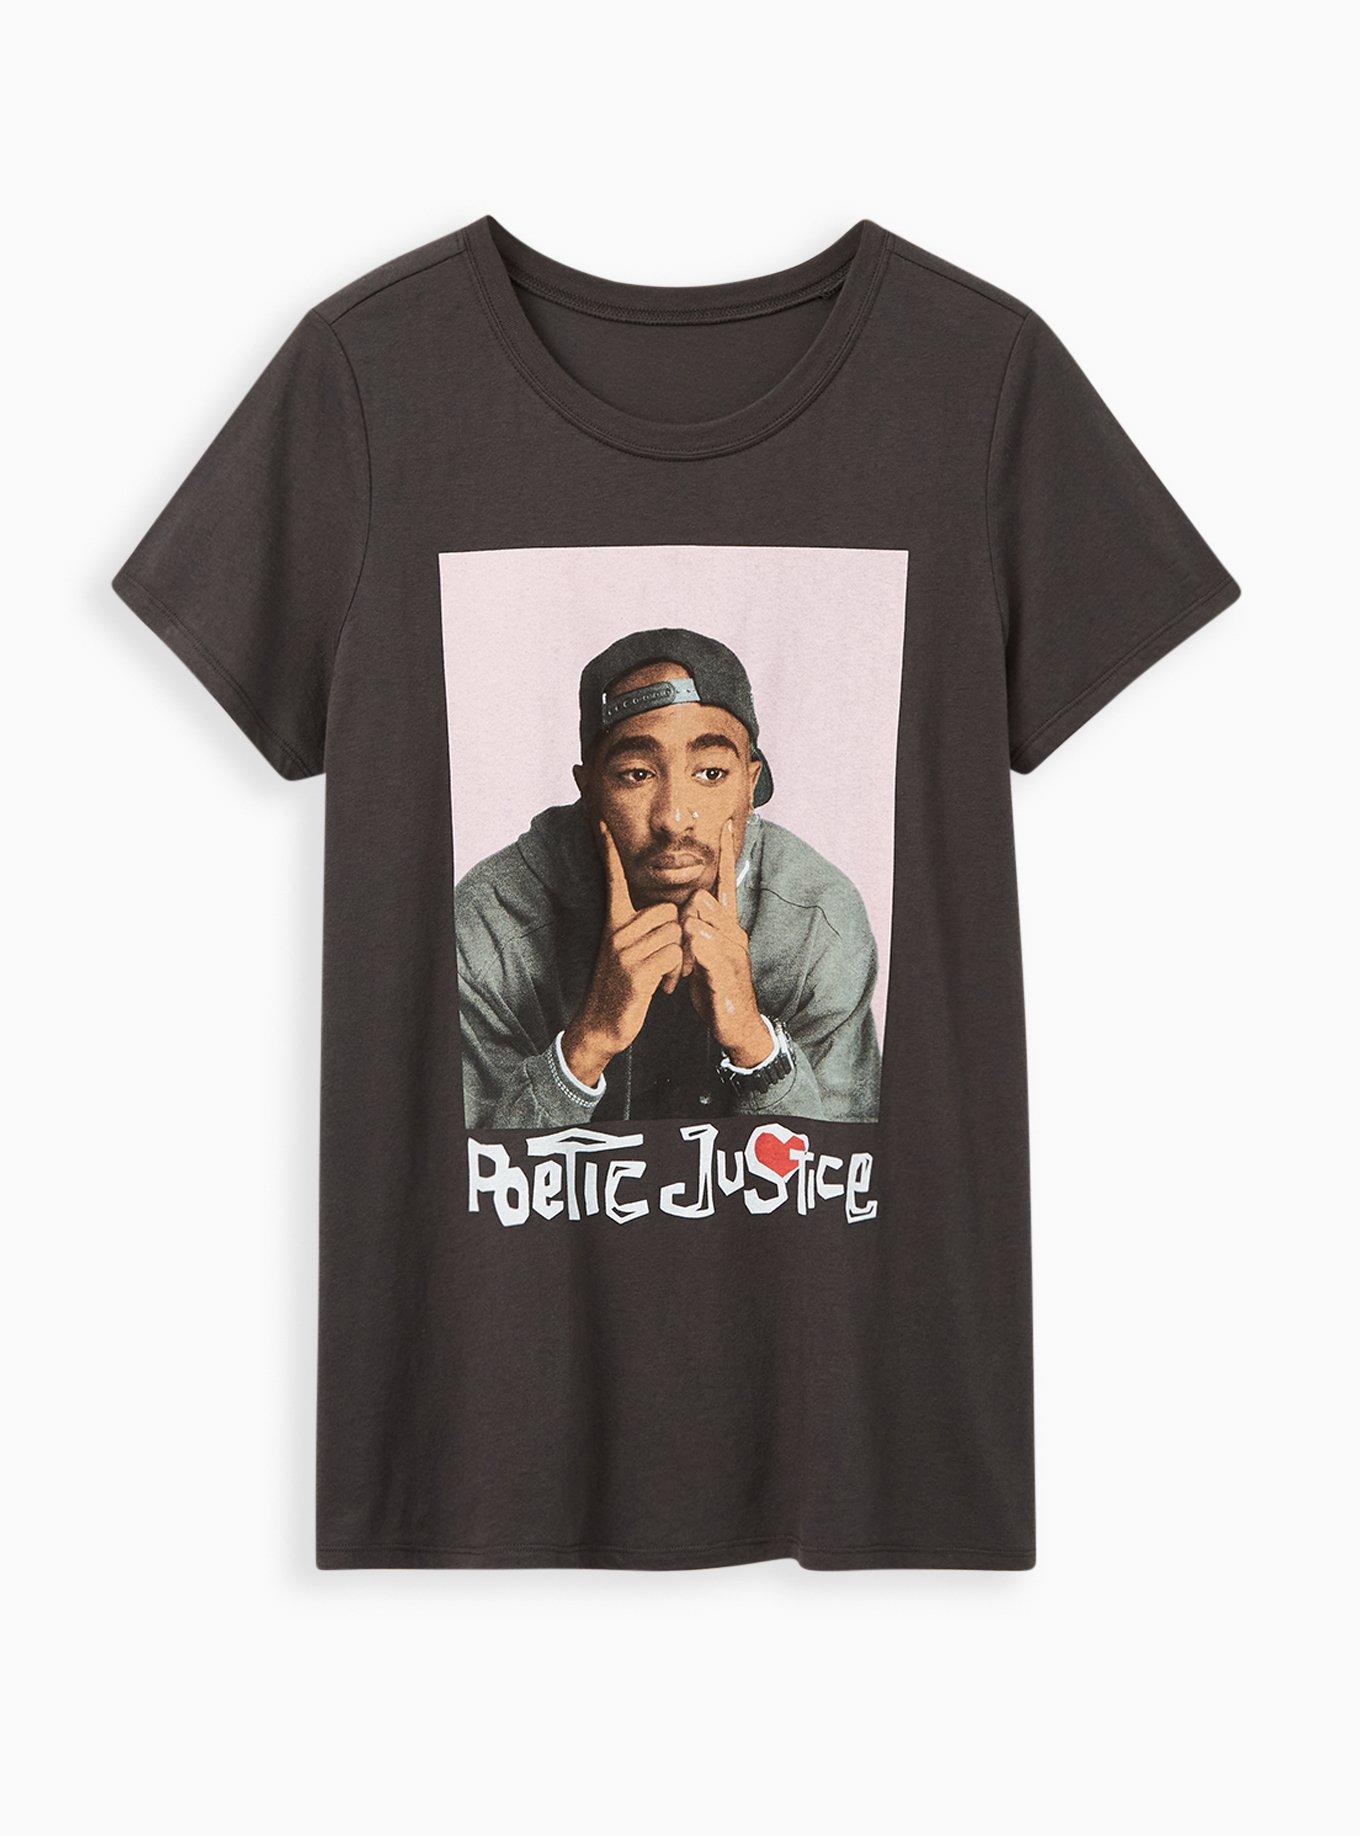 Tupac Shakur Poetic Justice T-Shirt XL NWT